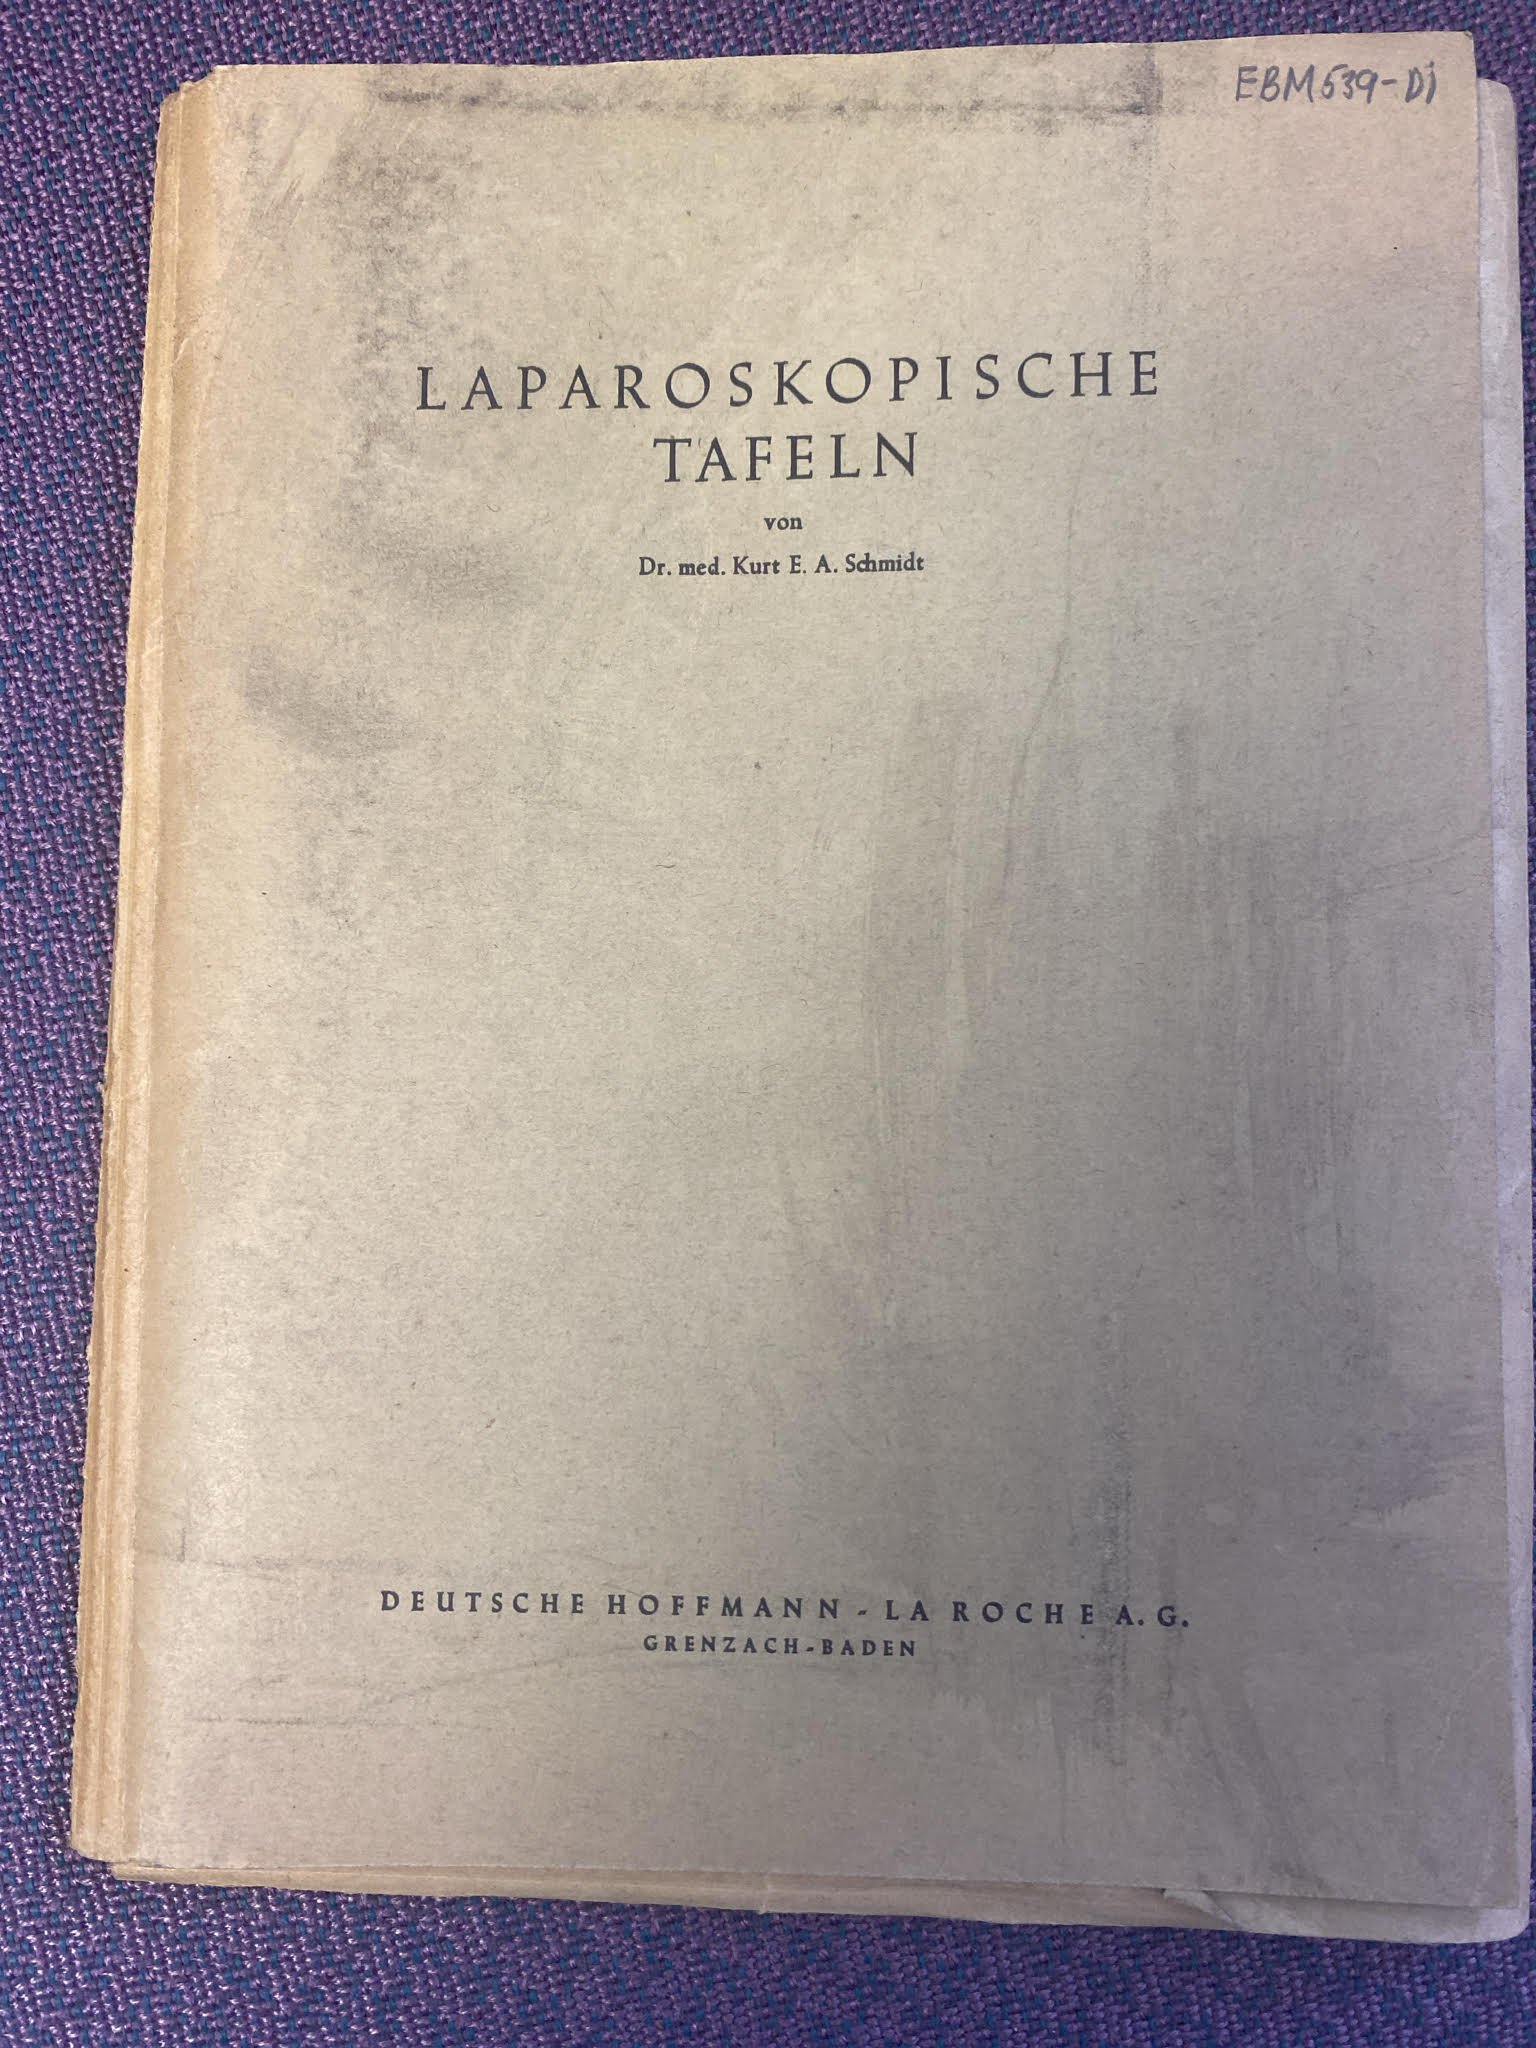 Laparoskopische Tafeln (Krankenhausmuseum Bielefeld e.V. CC BY-NC-SA)